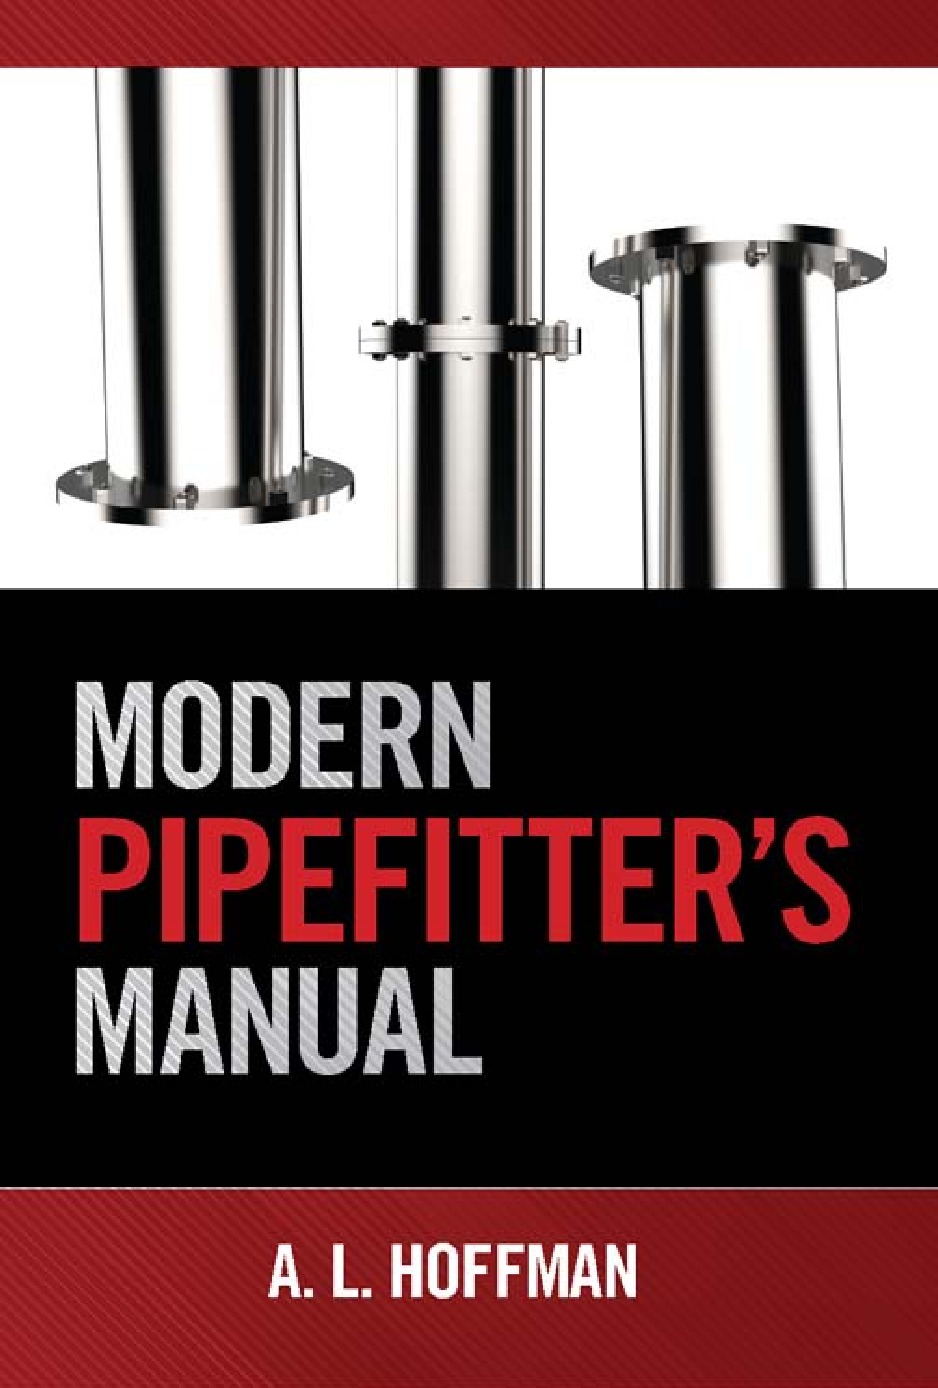 Modern Pipefitter's Manual